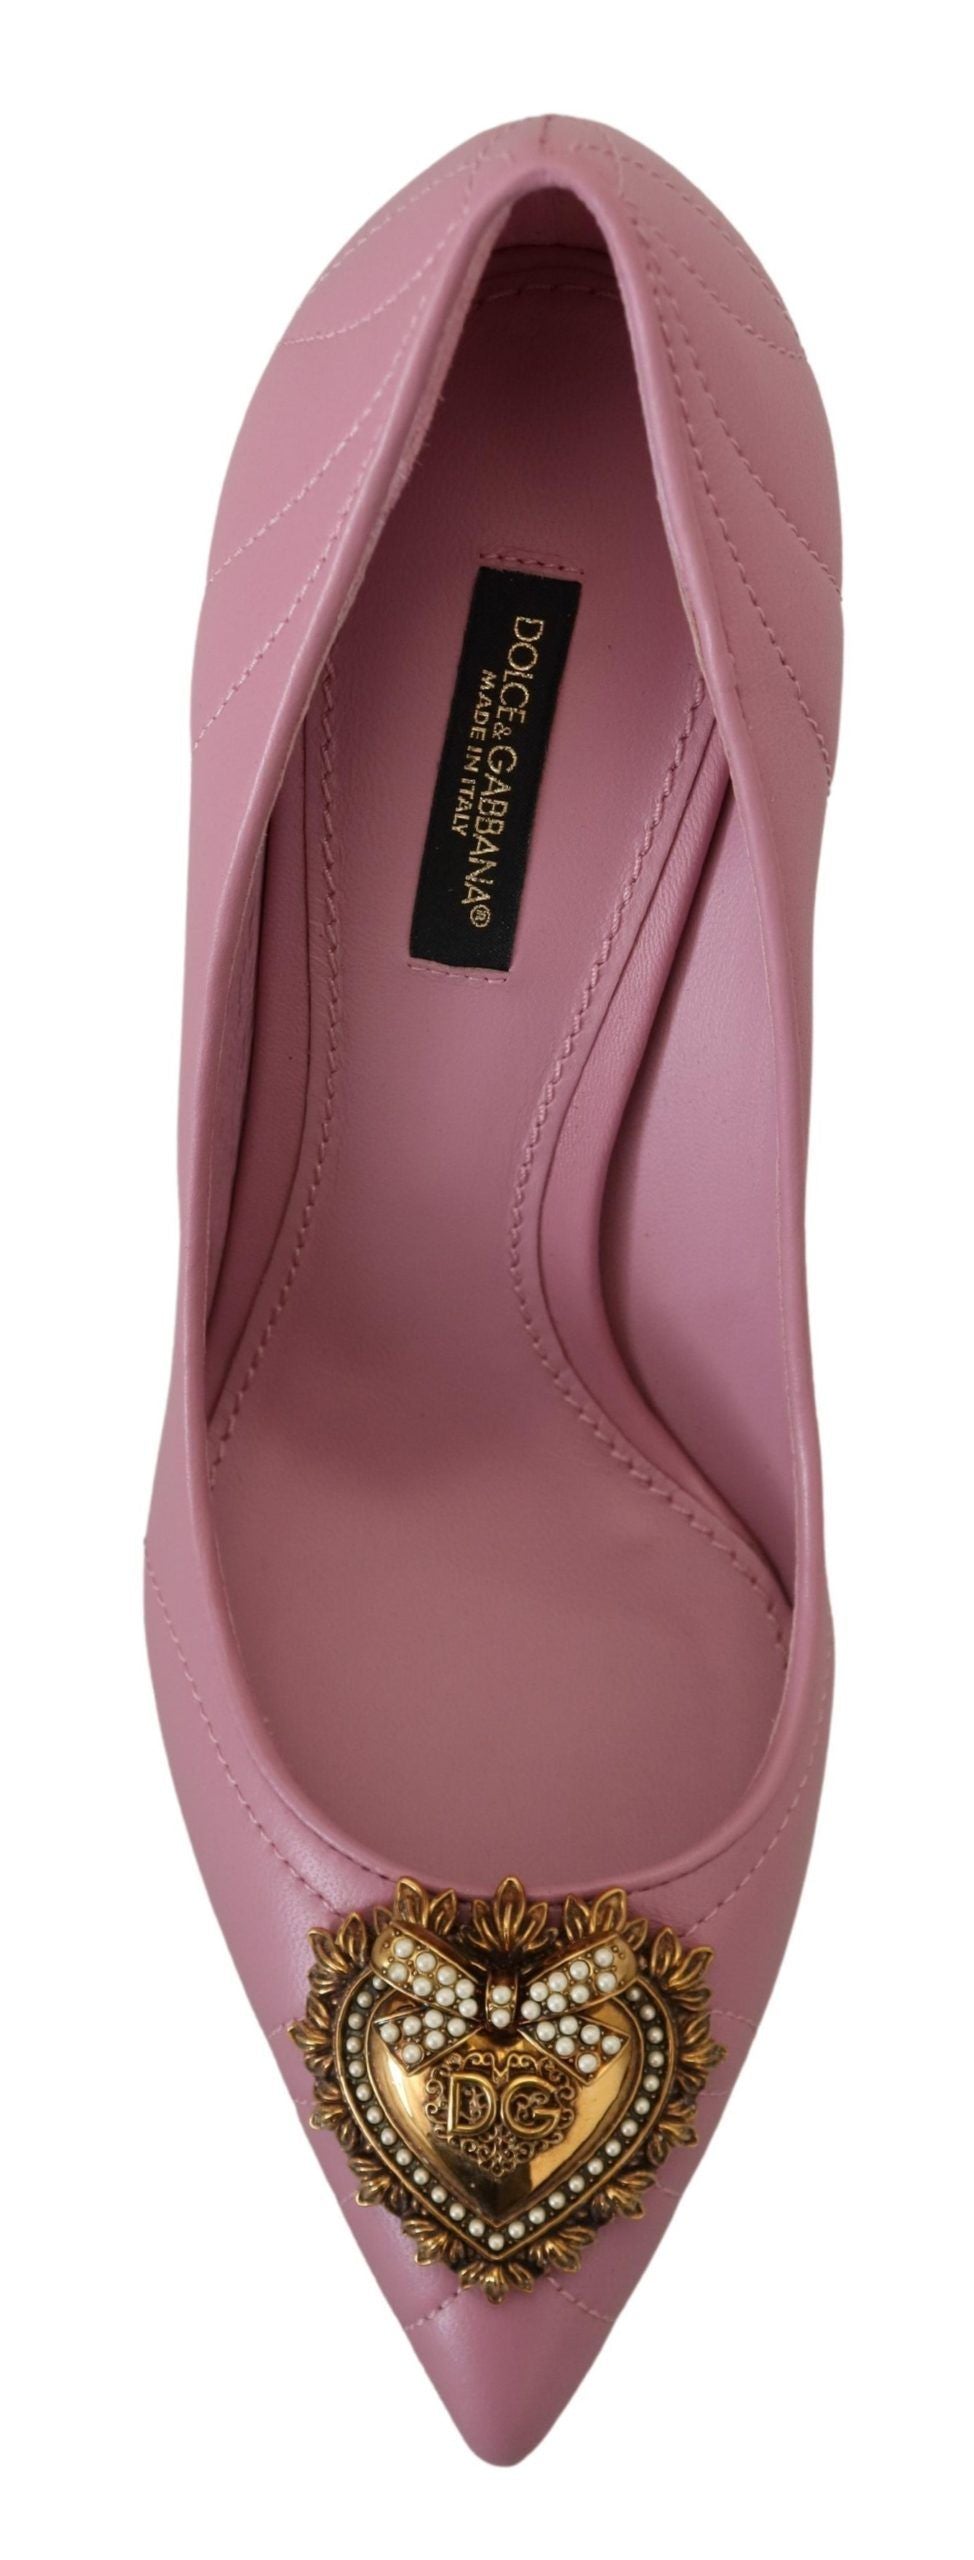 Devotion Leather Heels in Pink